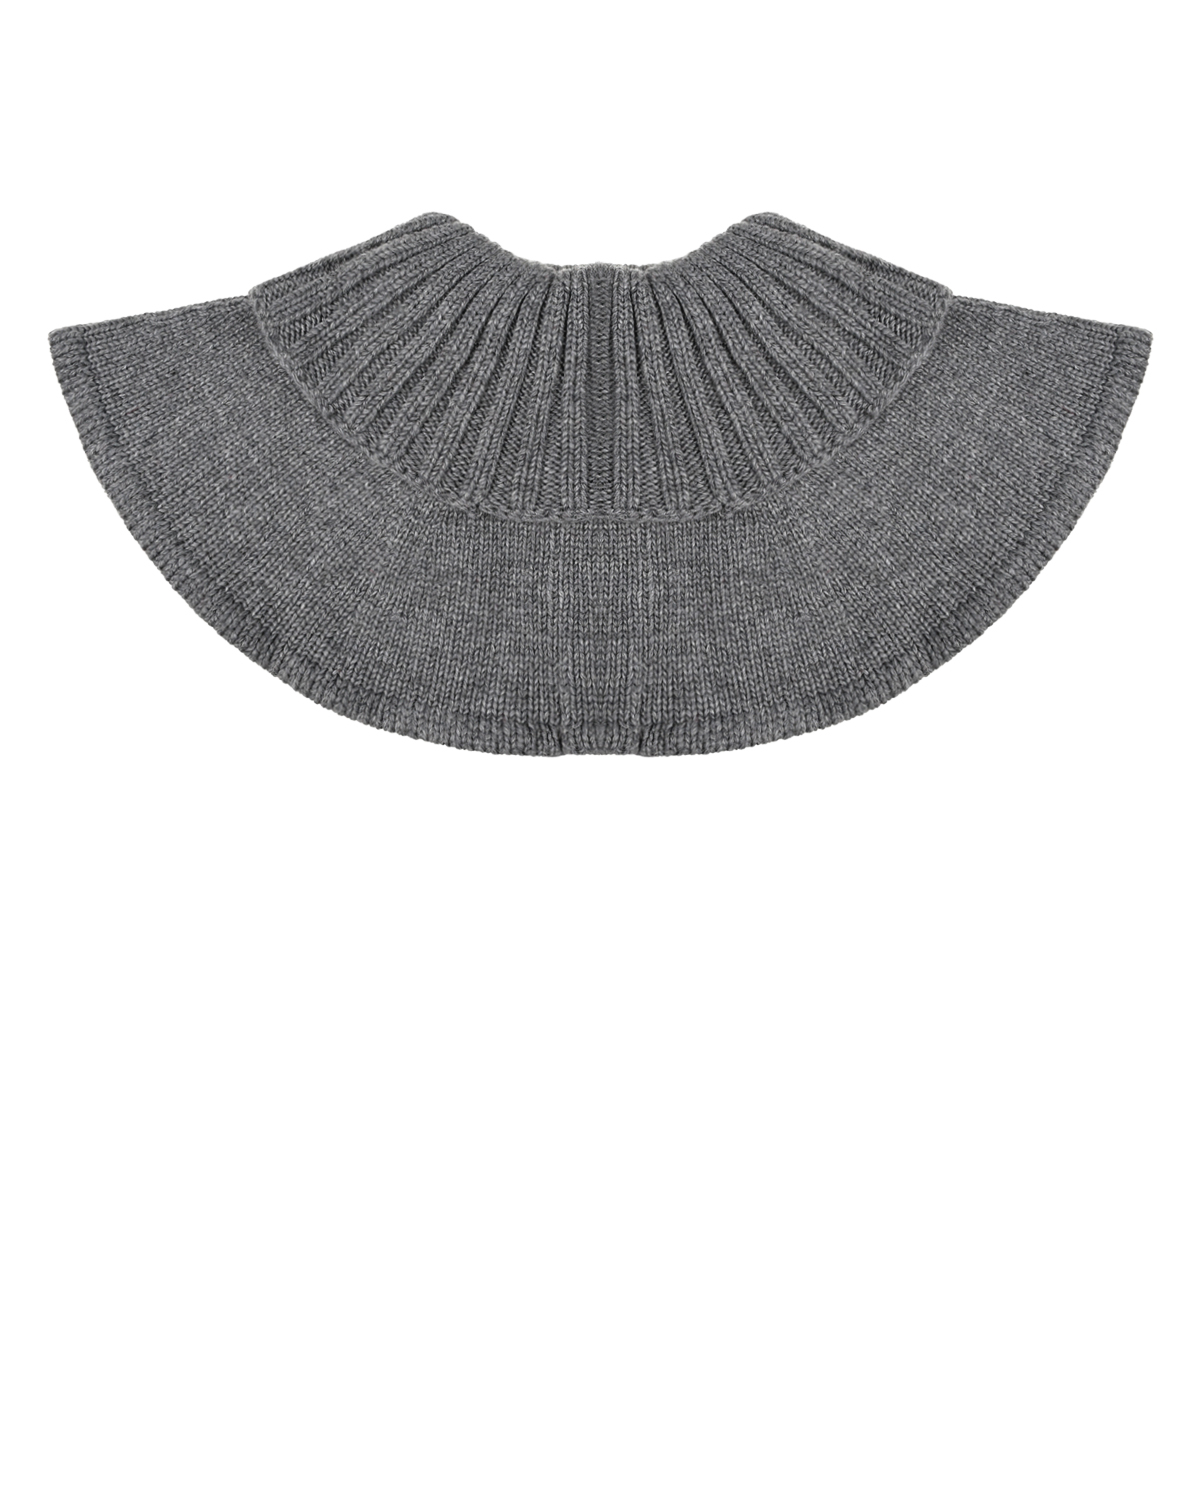 Серый вязаный шарф-горло Chobi детский, размер unica